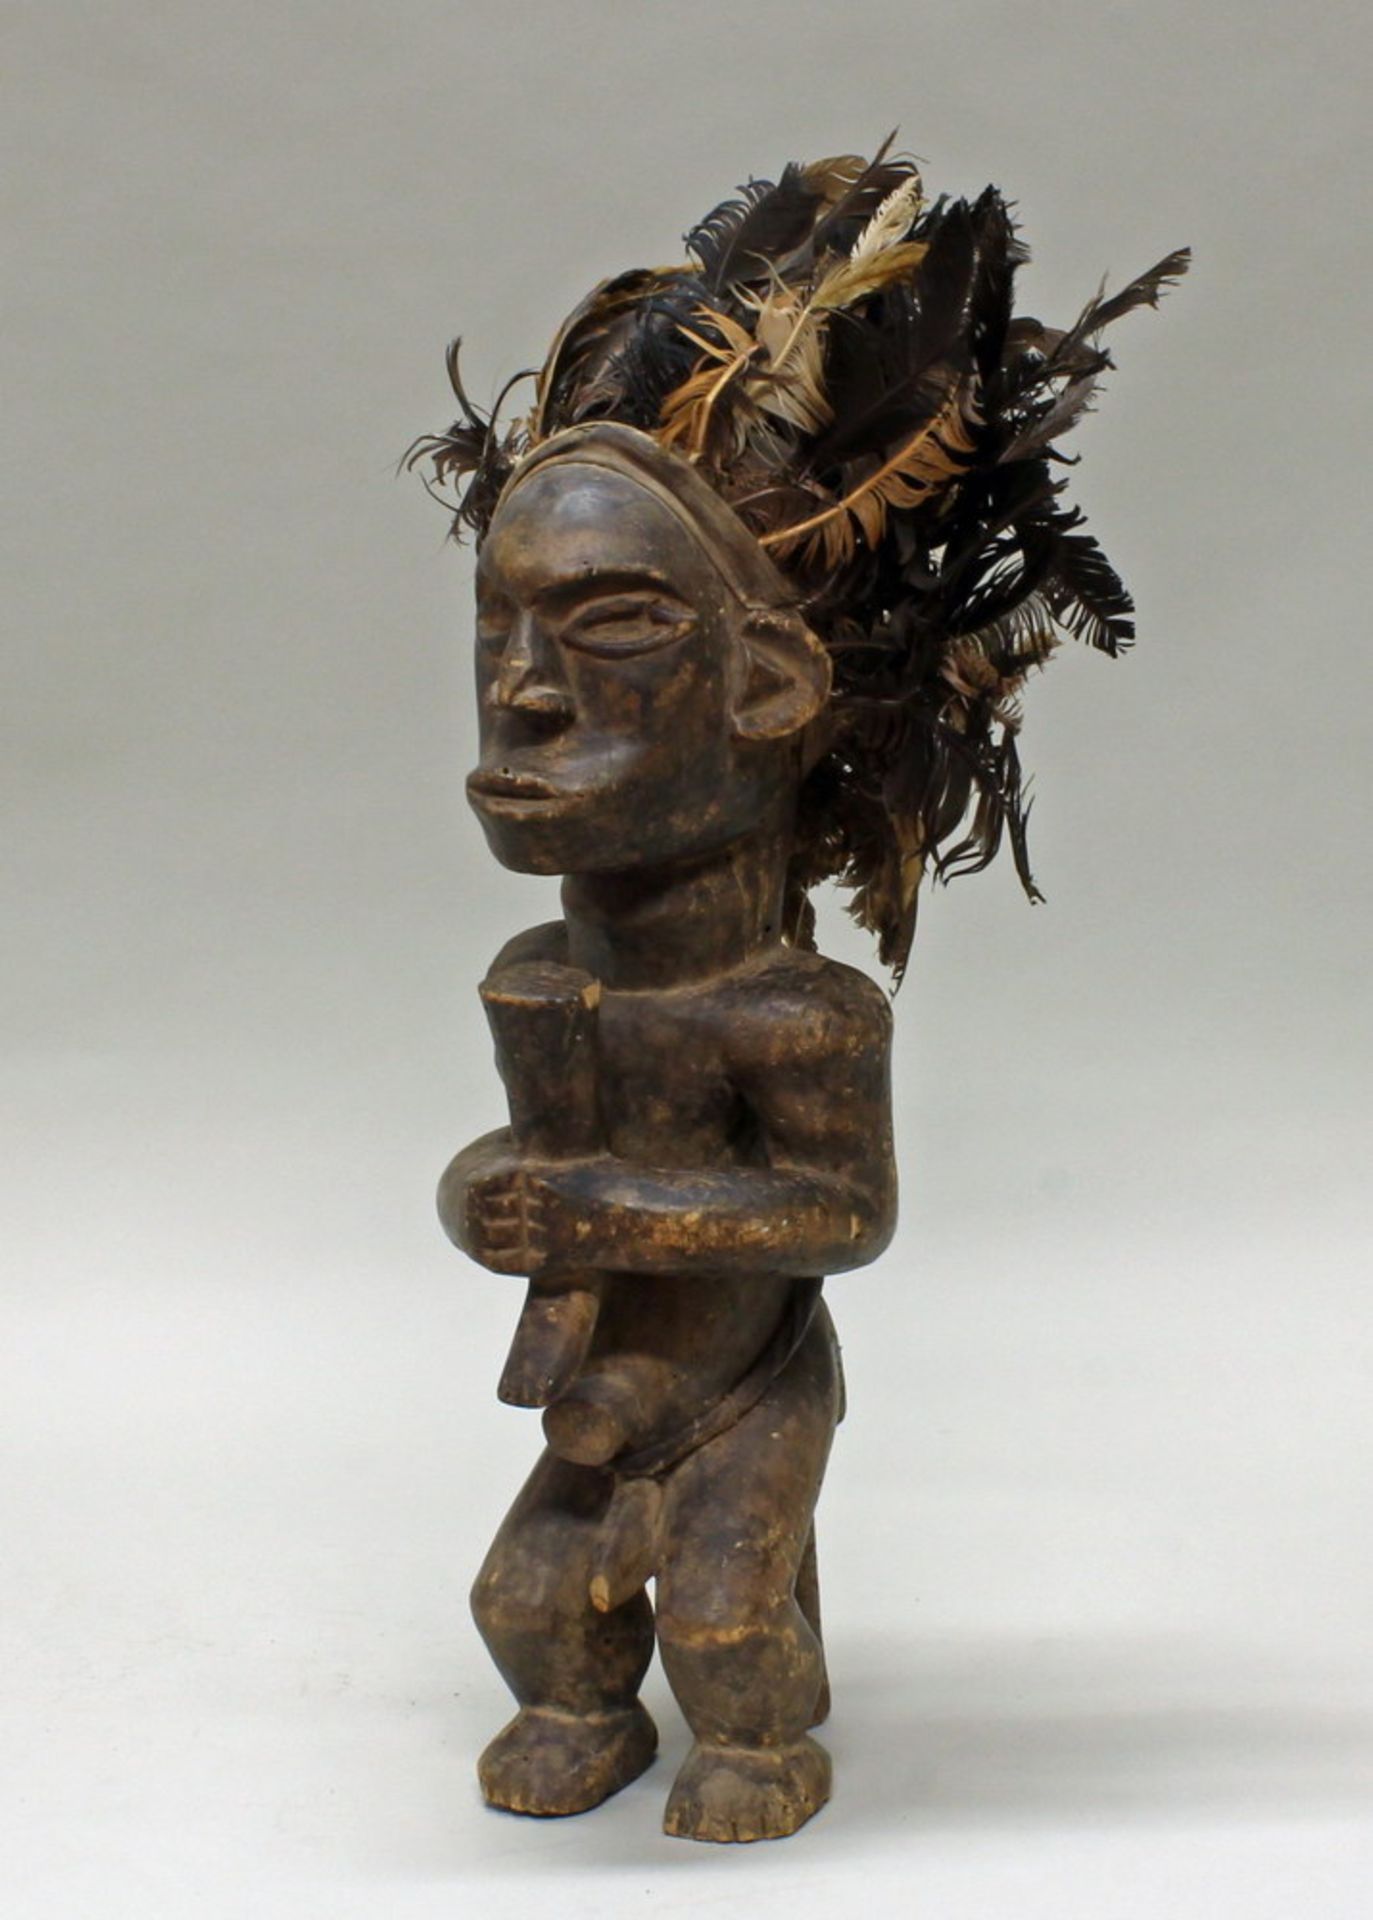 Sitzende Figur, mit Federschmuck, Fang, Afrika, Holz, ca. 50 cm hoch. Provenienz: Privatsammlung